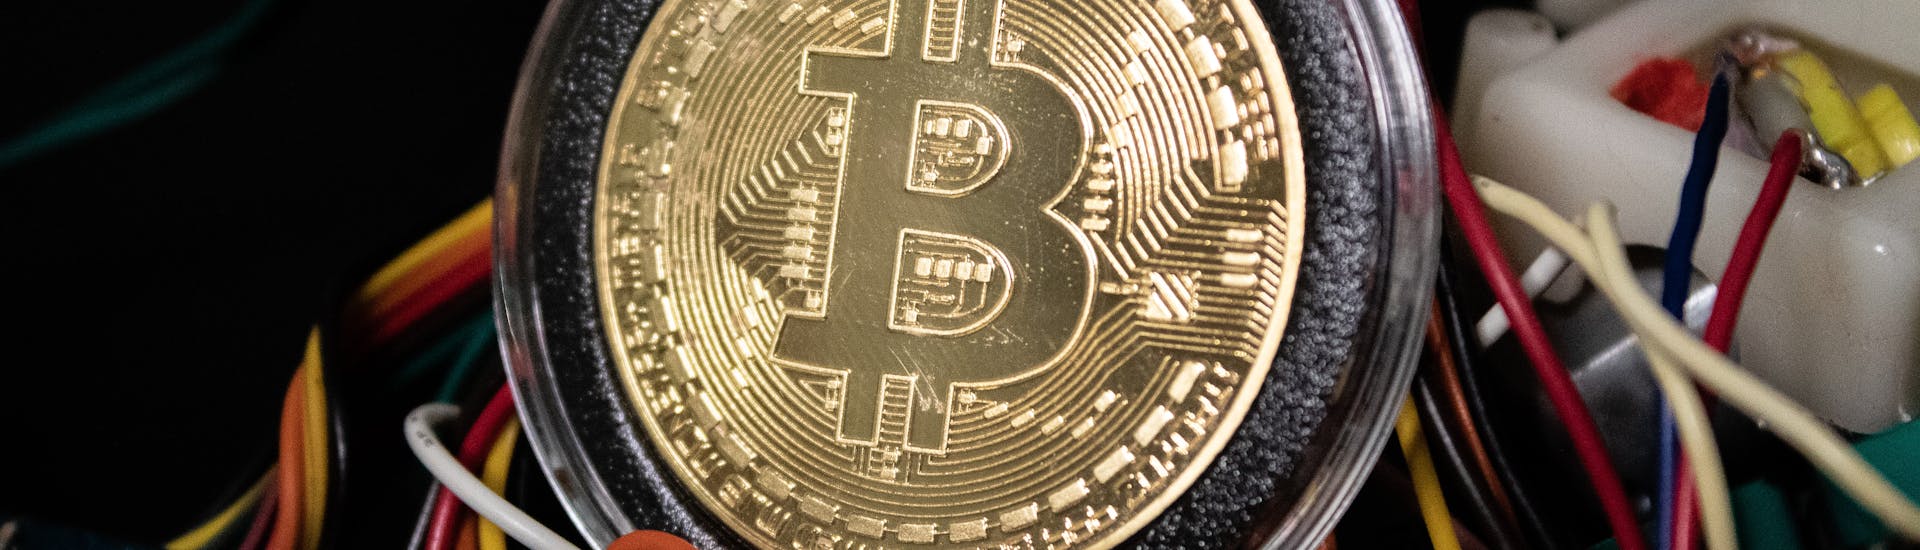 minare bitcoin gratis